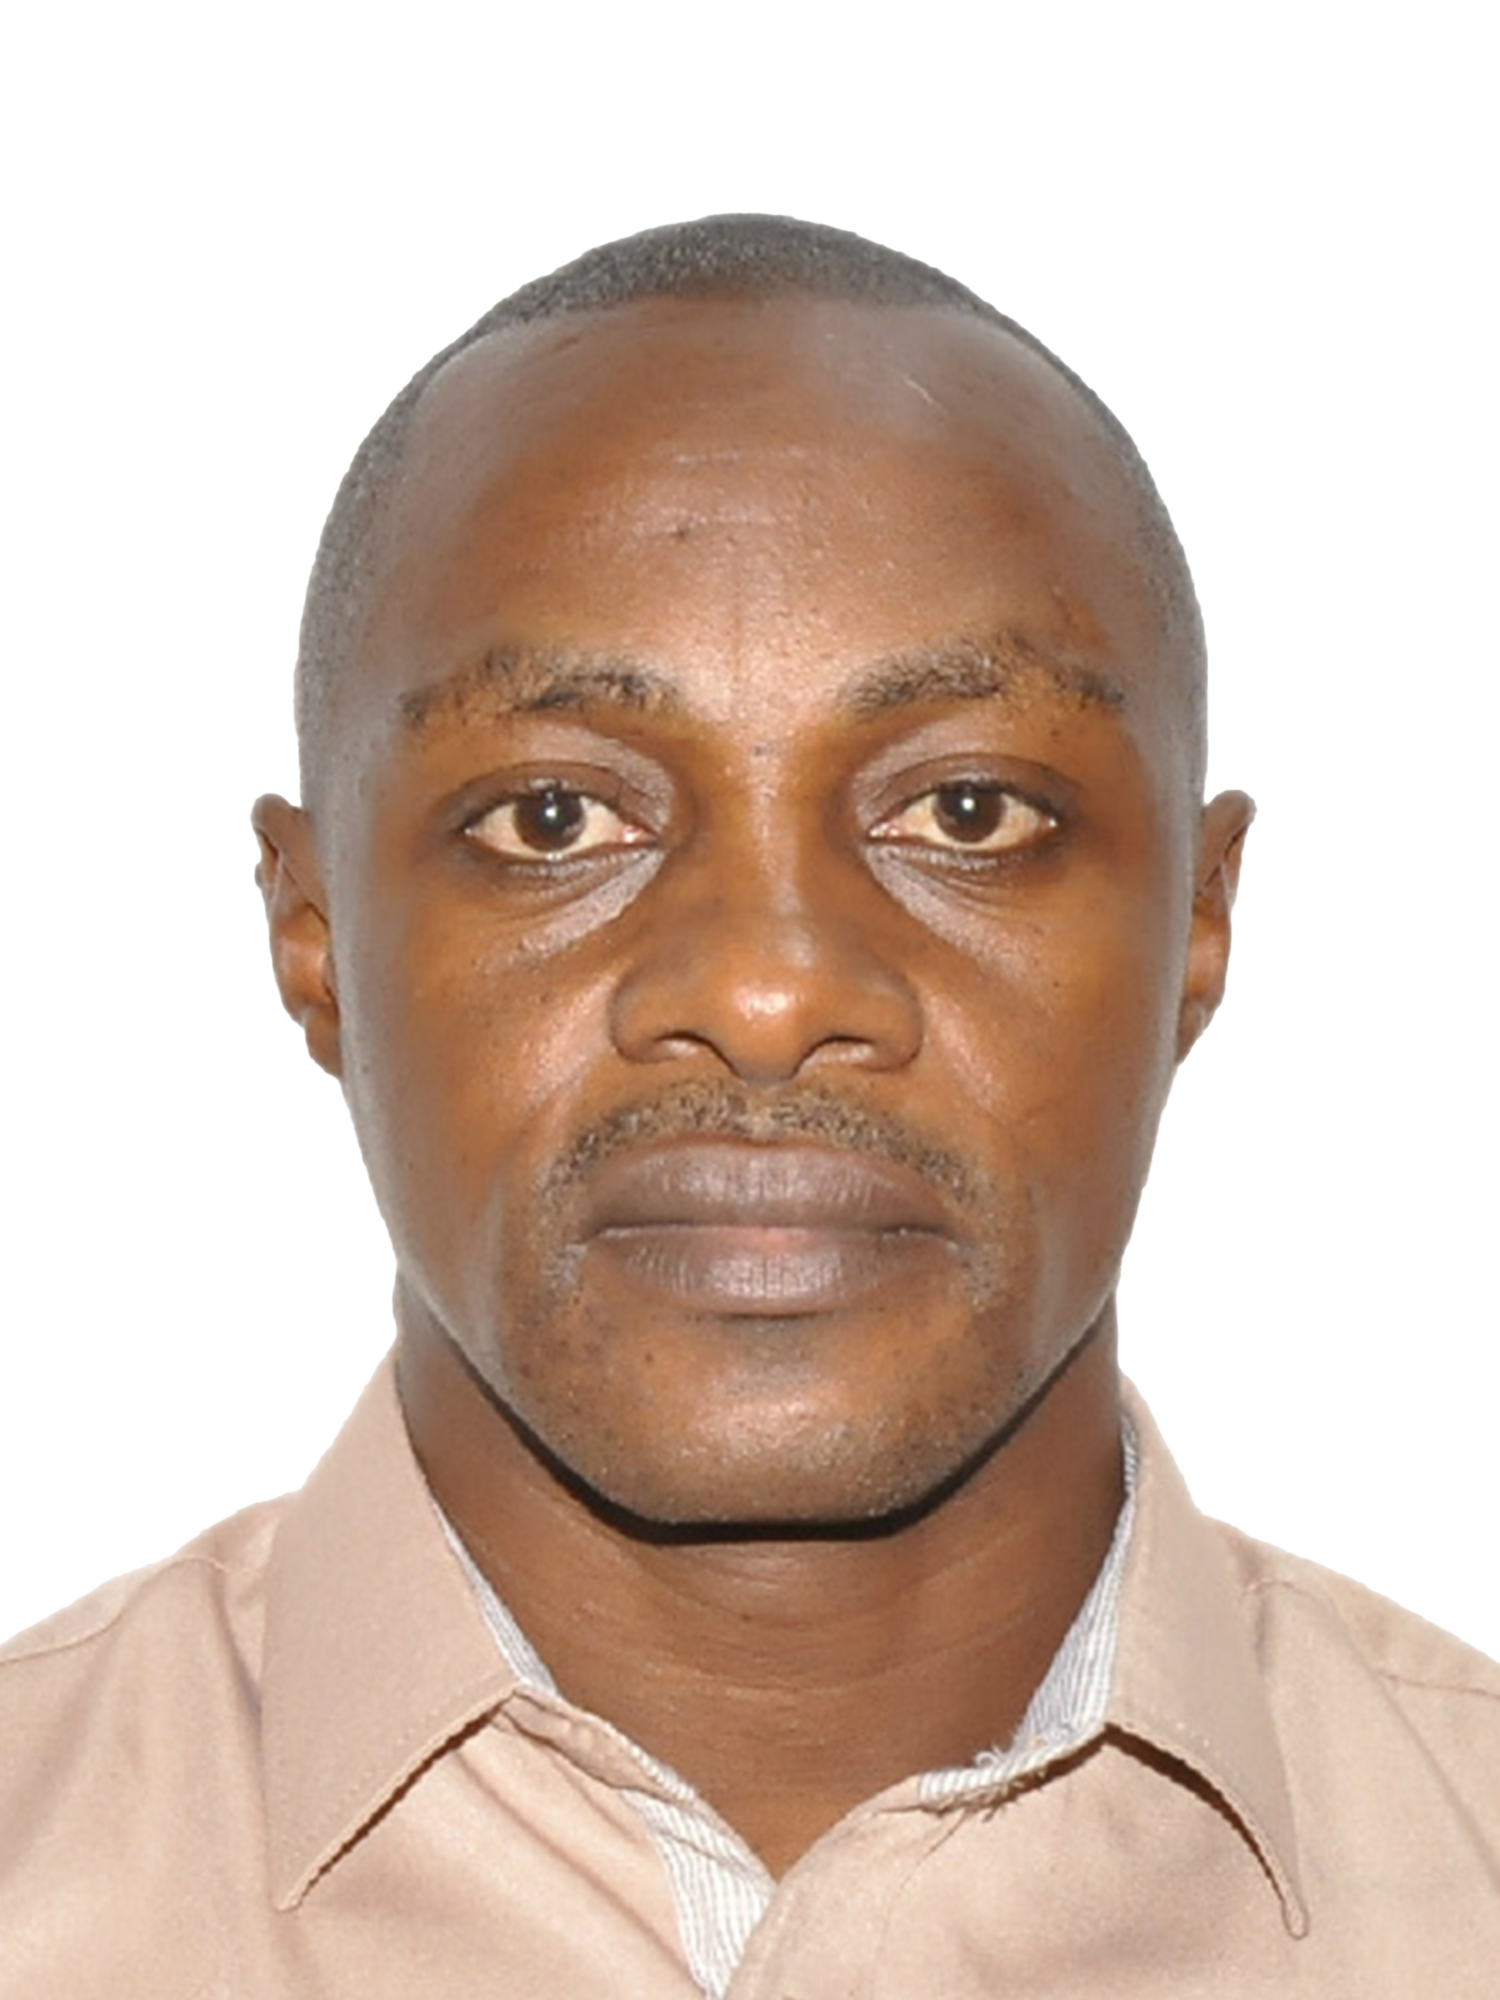 Dr. Emmanuel Masabo